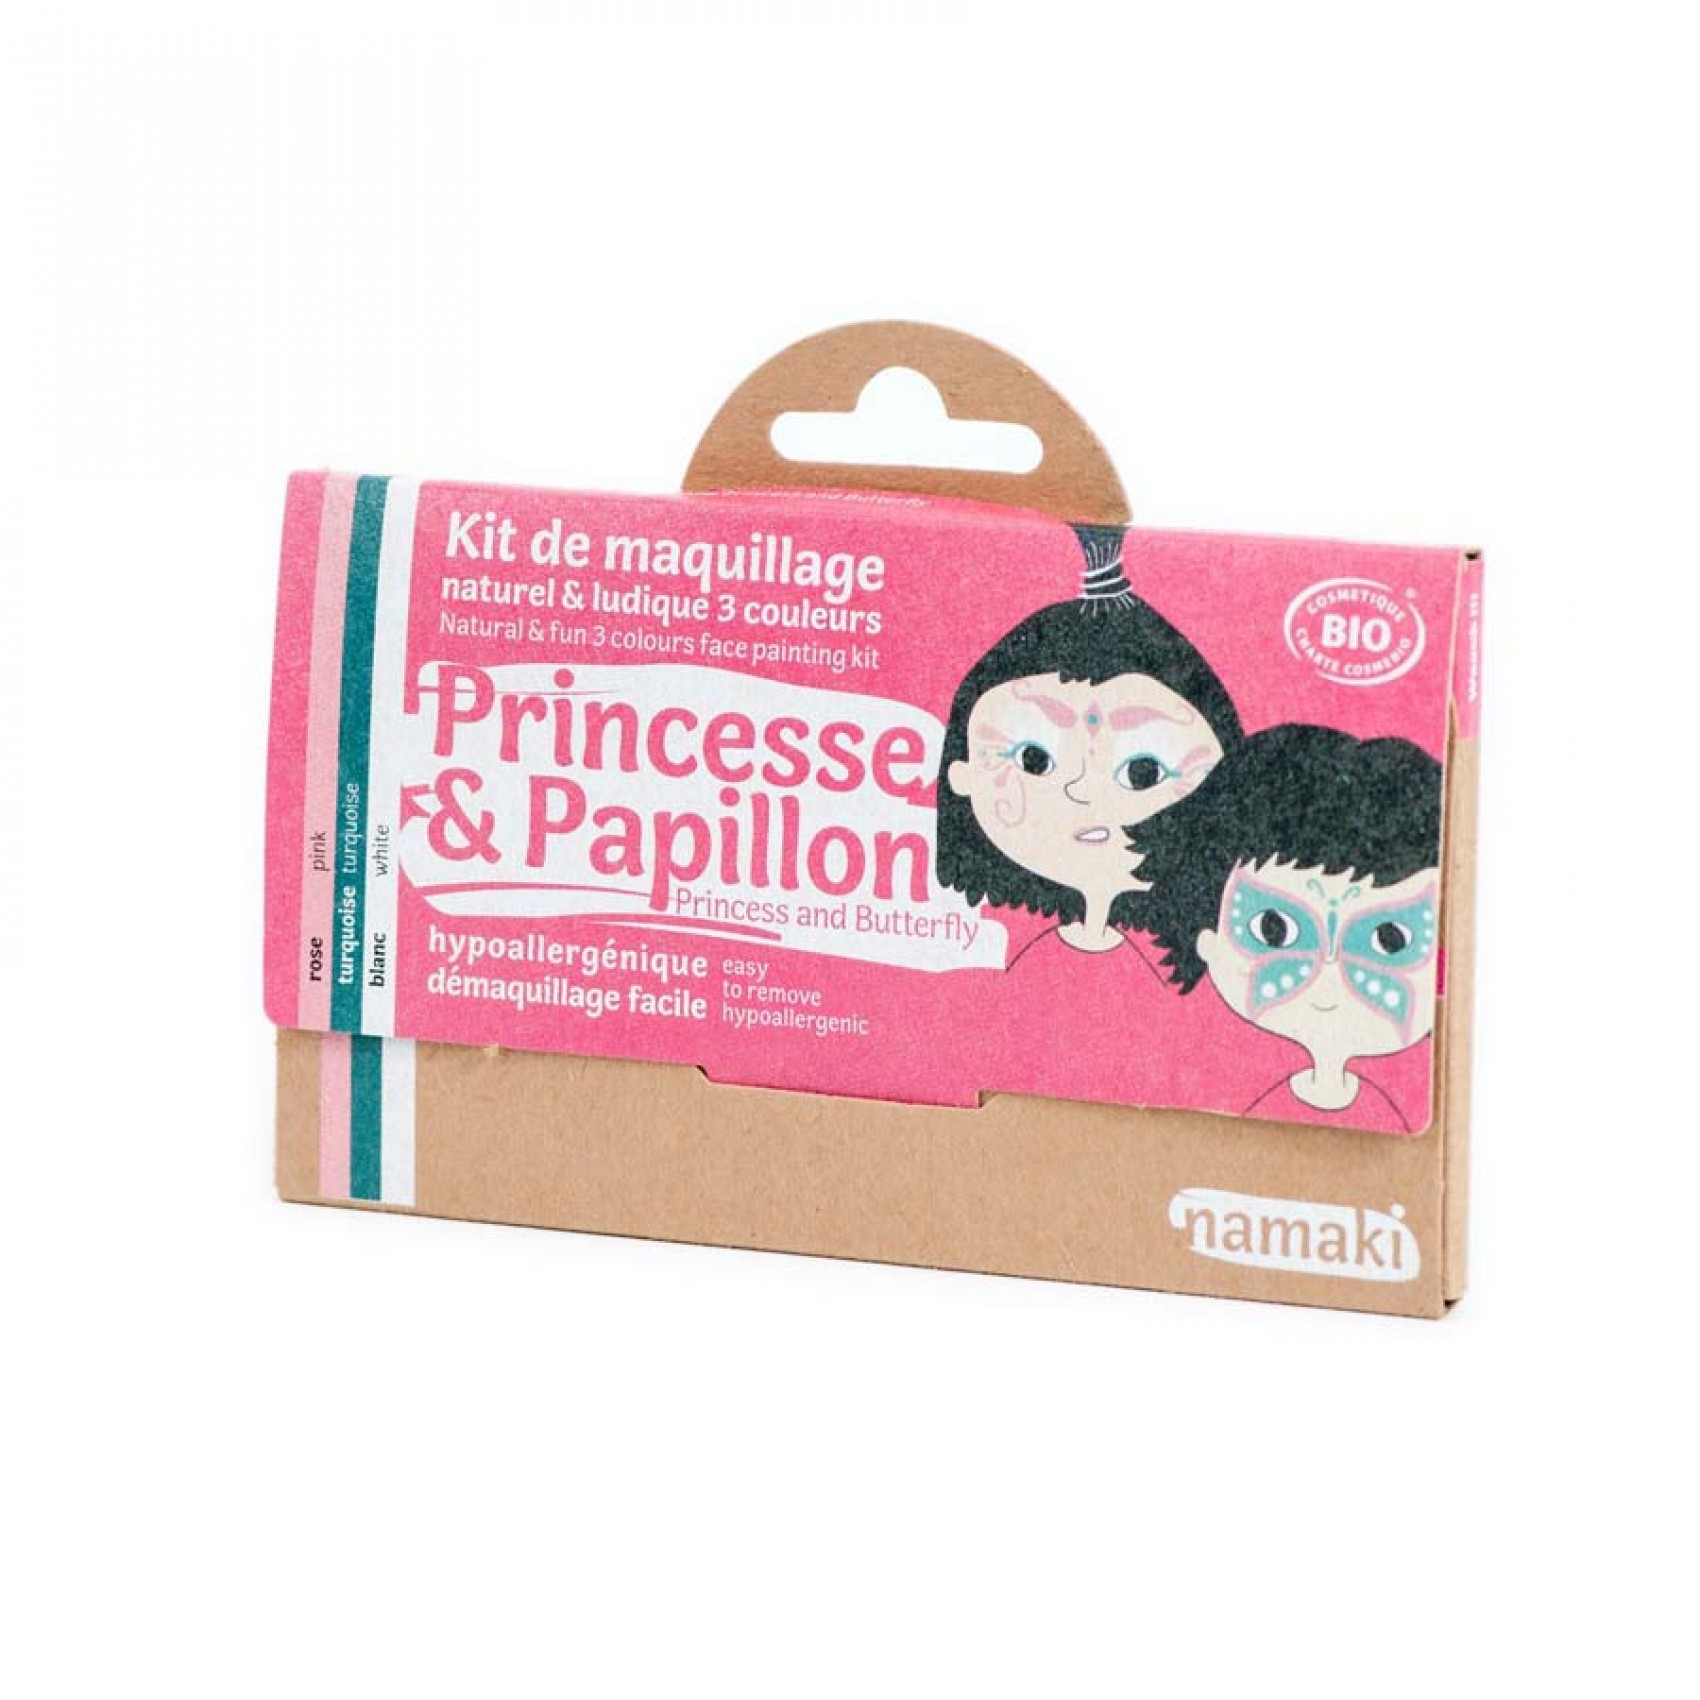 Kit de maquillage bio 3 couleurs, Princesse et Licorne pour enfants achat  vente écologique - Acheter sur